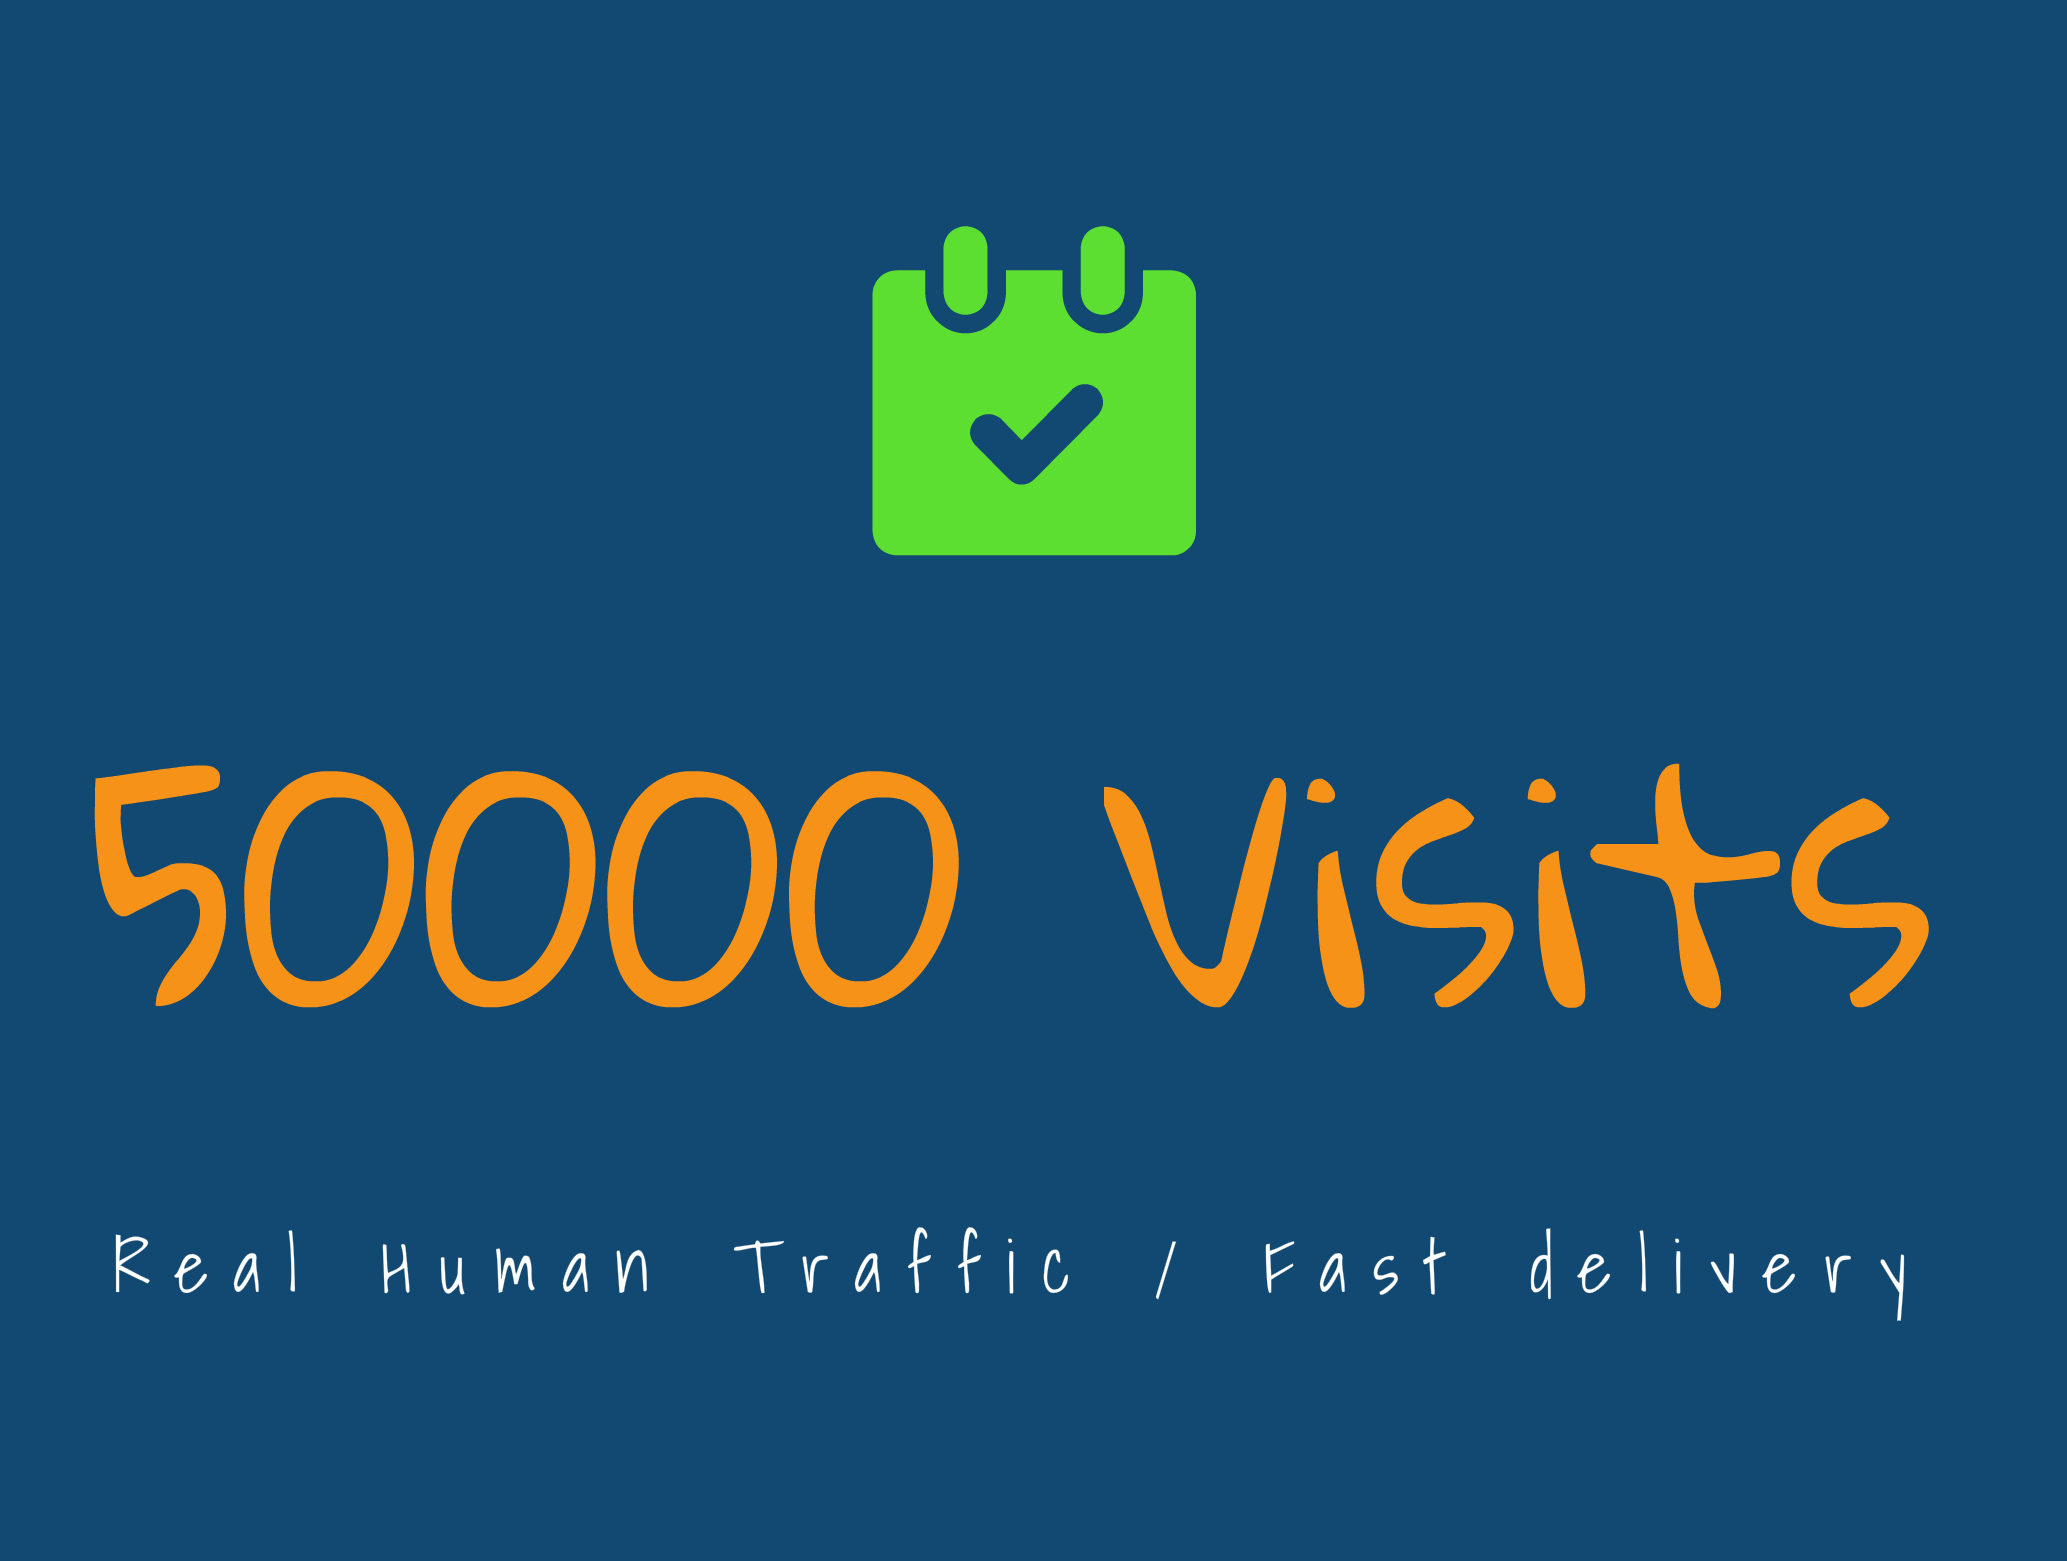 WEBSITE TRAFFIC - 50.000 VISITS